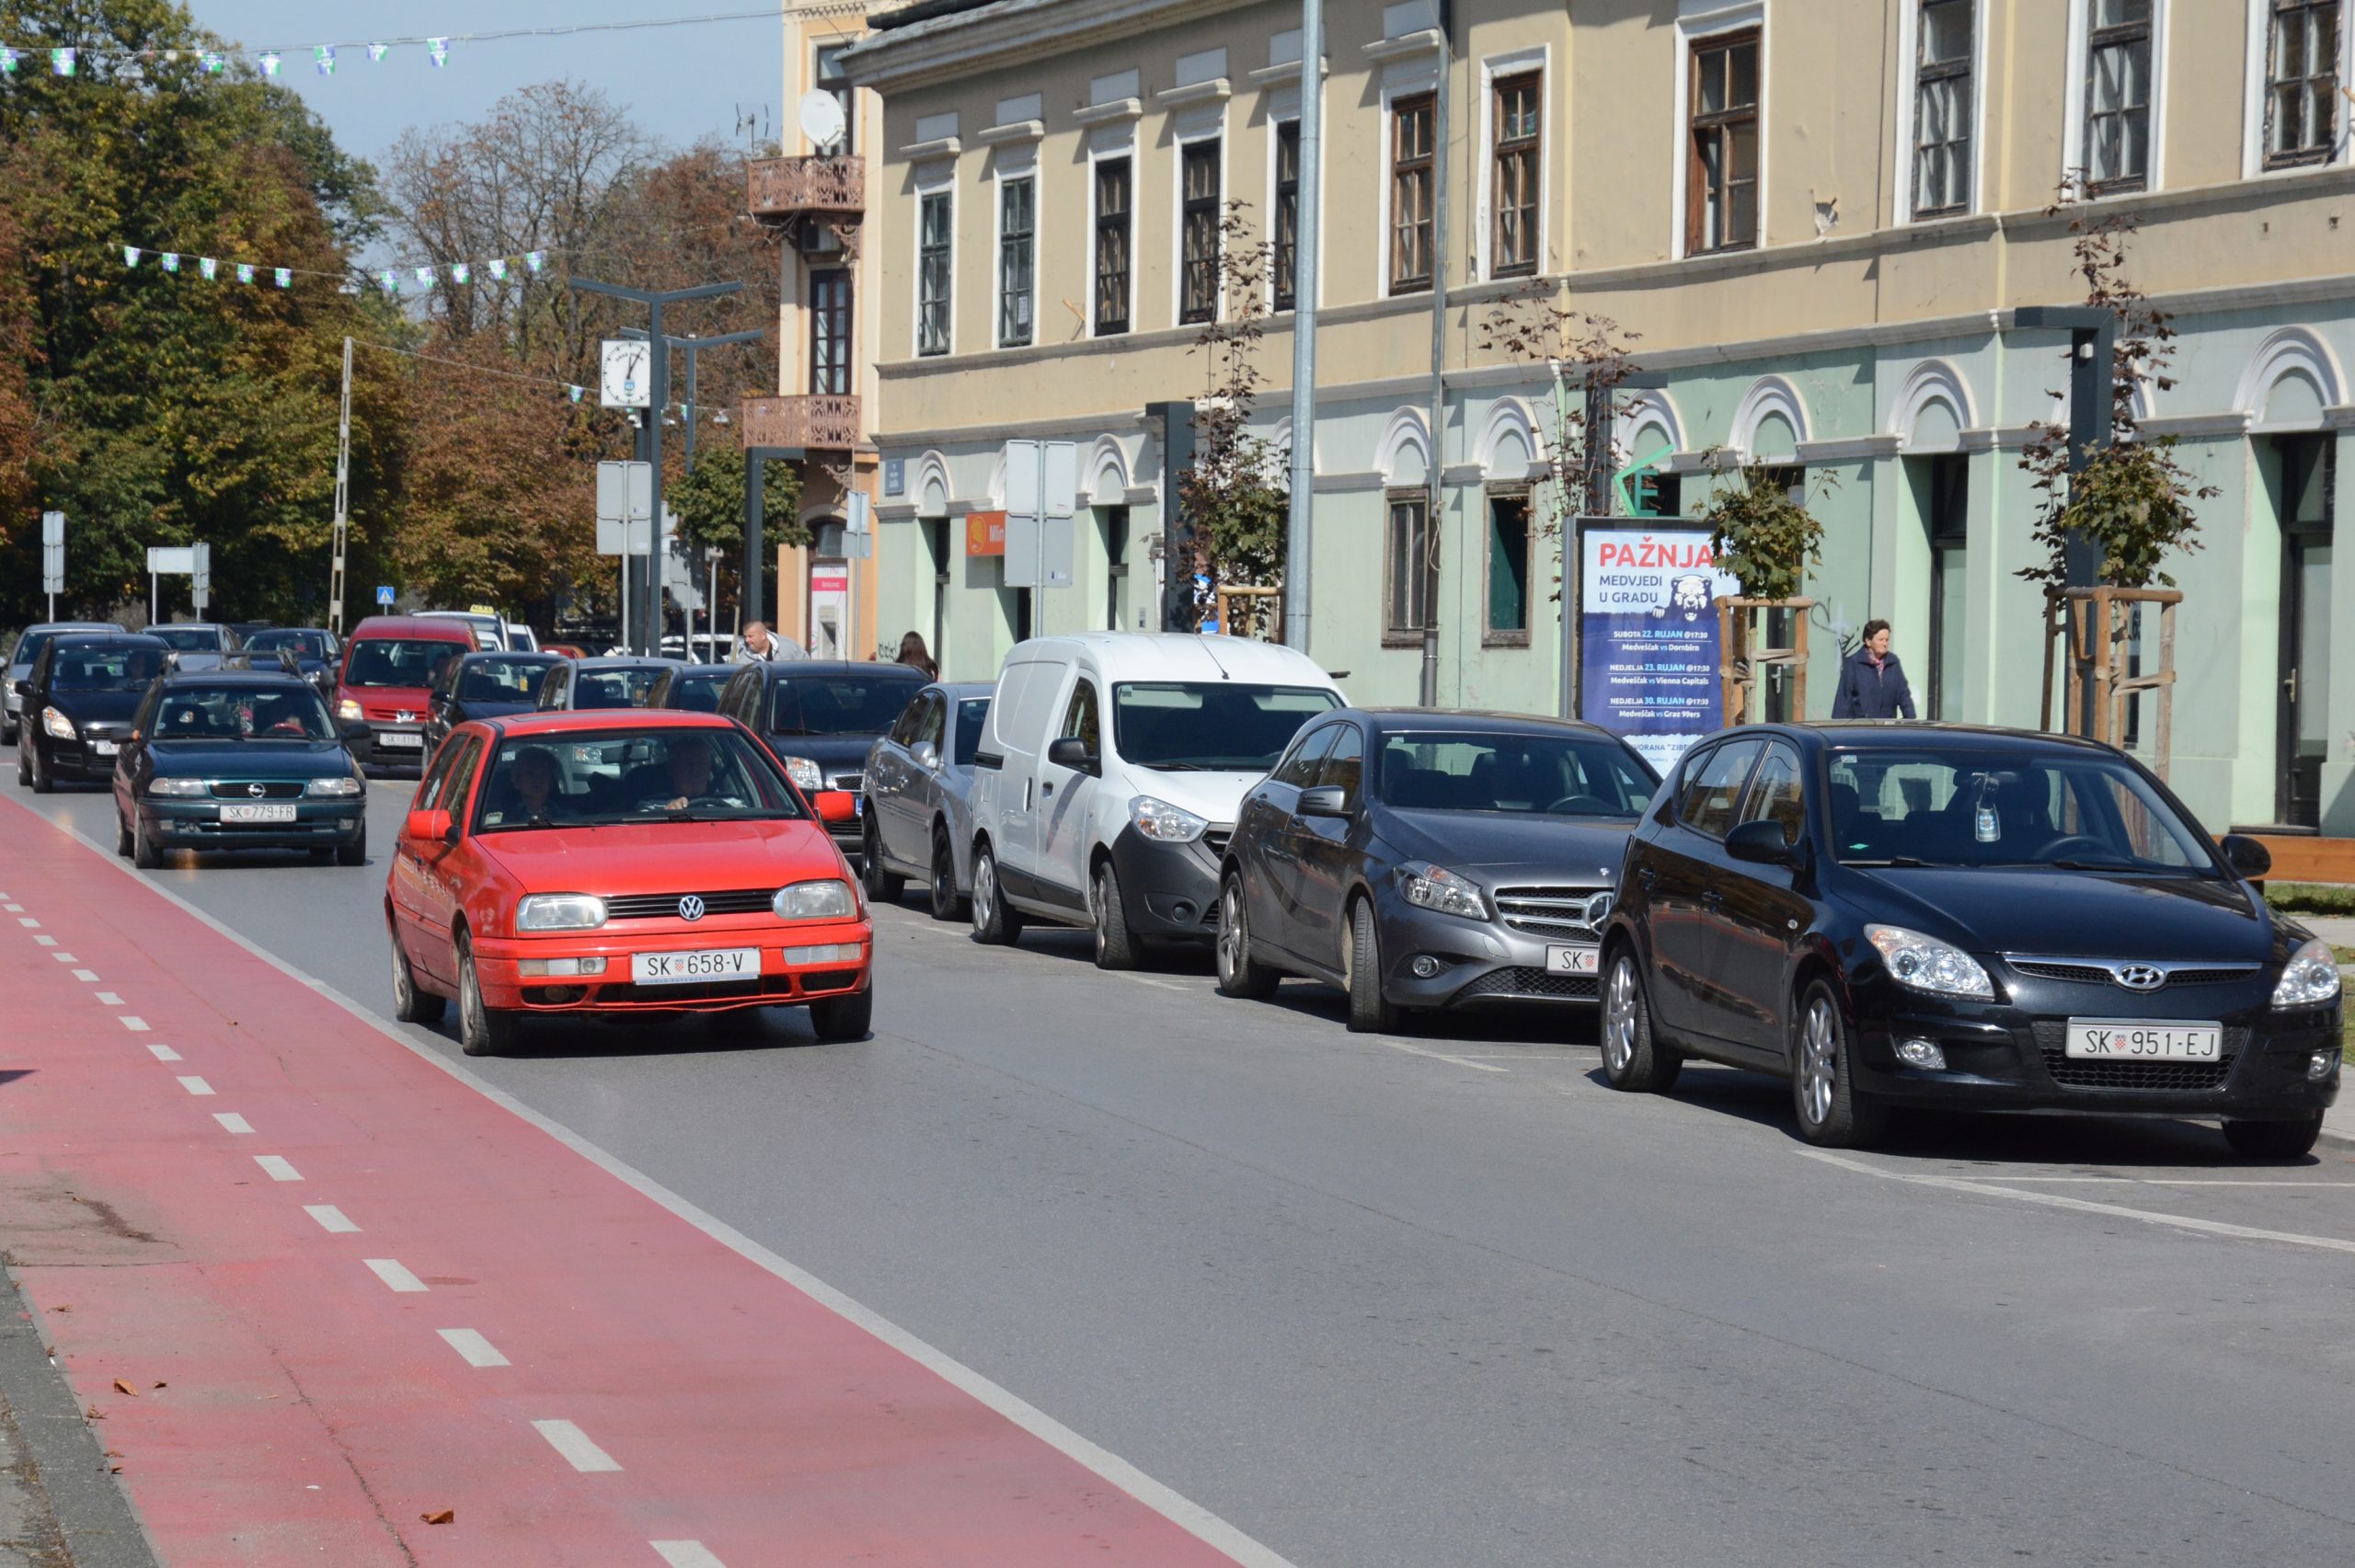 Sisak: Rimska ulica najprometnija je u gradu 04.10.2018., Sisak - Rimska ulica najprometnija je u gradu. Photo: Nikola Cutuk/PIXSELL